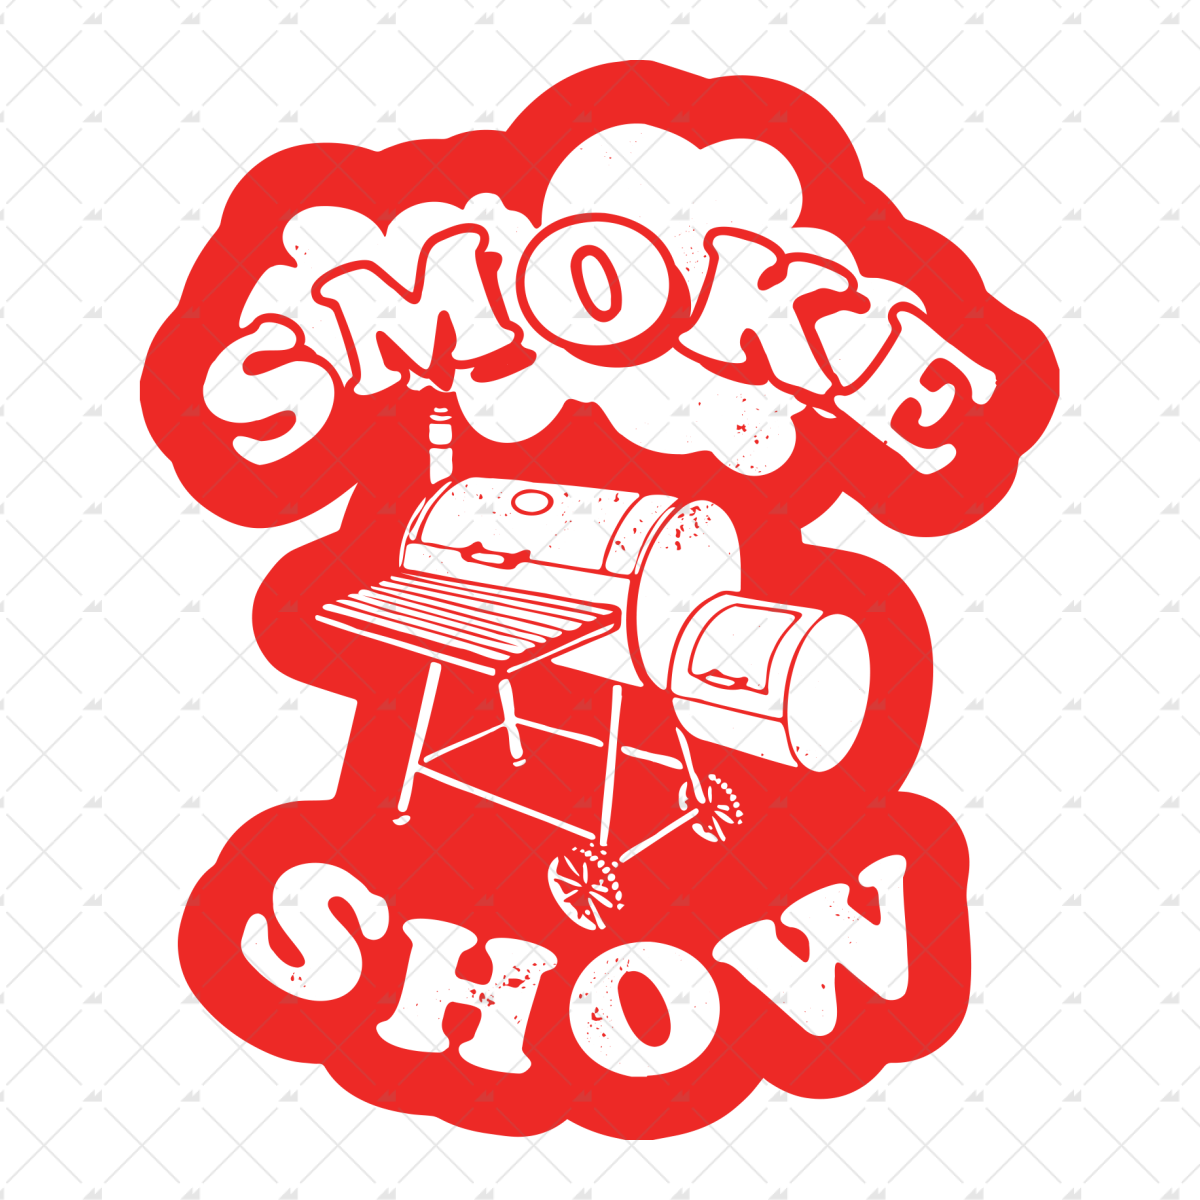 Smoke Show - Sticker